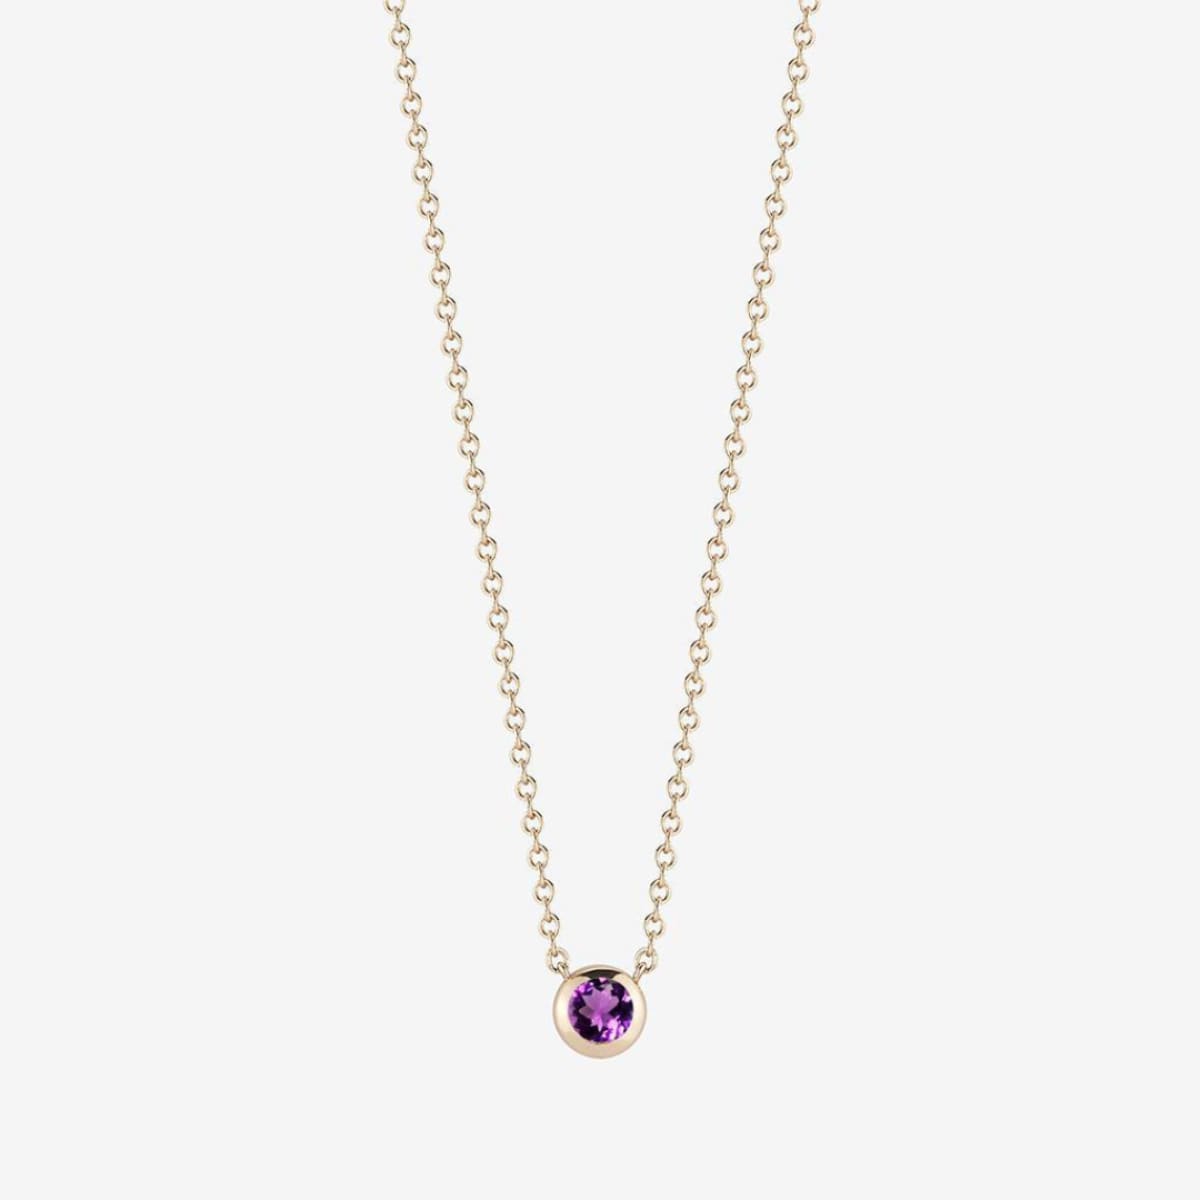 Kyle Cavan Jewelry Amethyst Necklace - Necklaces